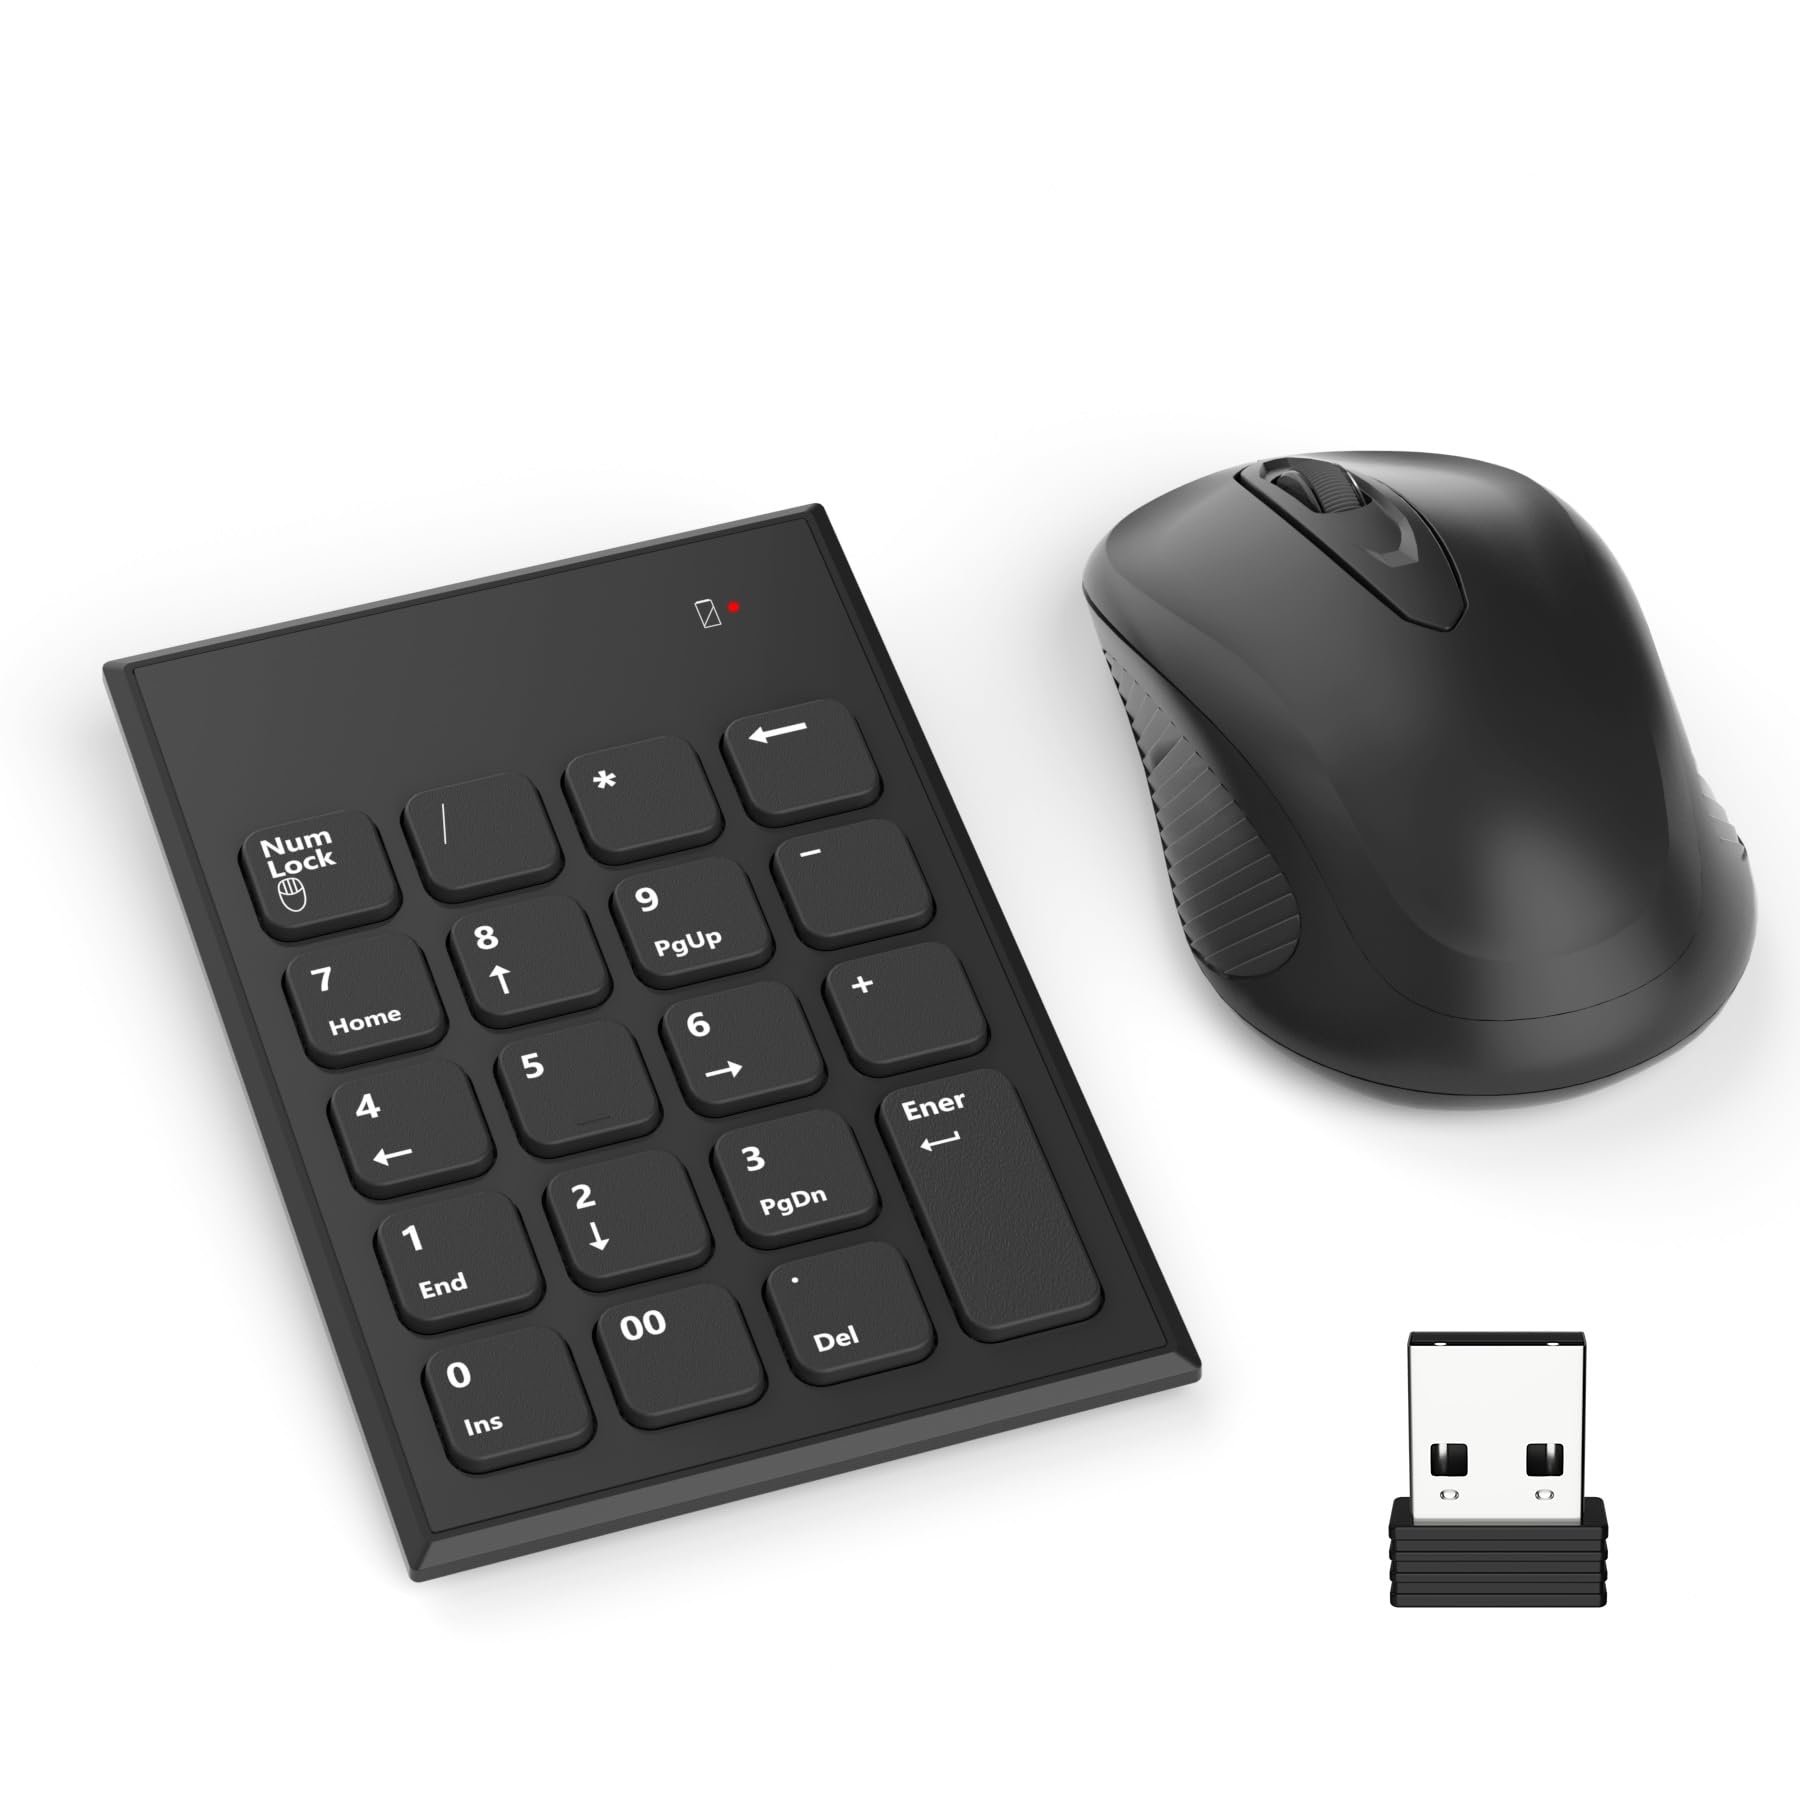 テンキー マウス セット ワイヤレス、USB受信機能付き 2.4G 無線 テンキー マウスセットはラップトップ、デスクトップPC、ノートブックに対応可能